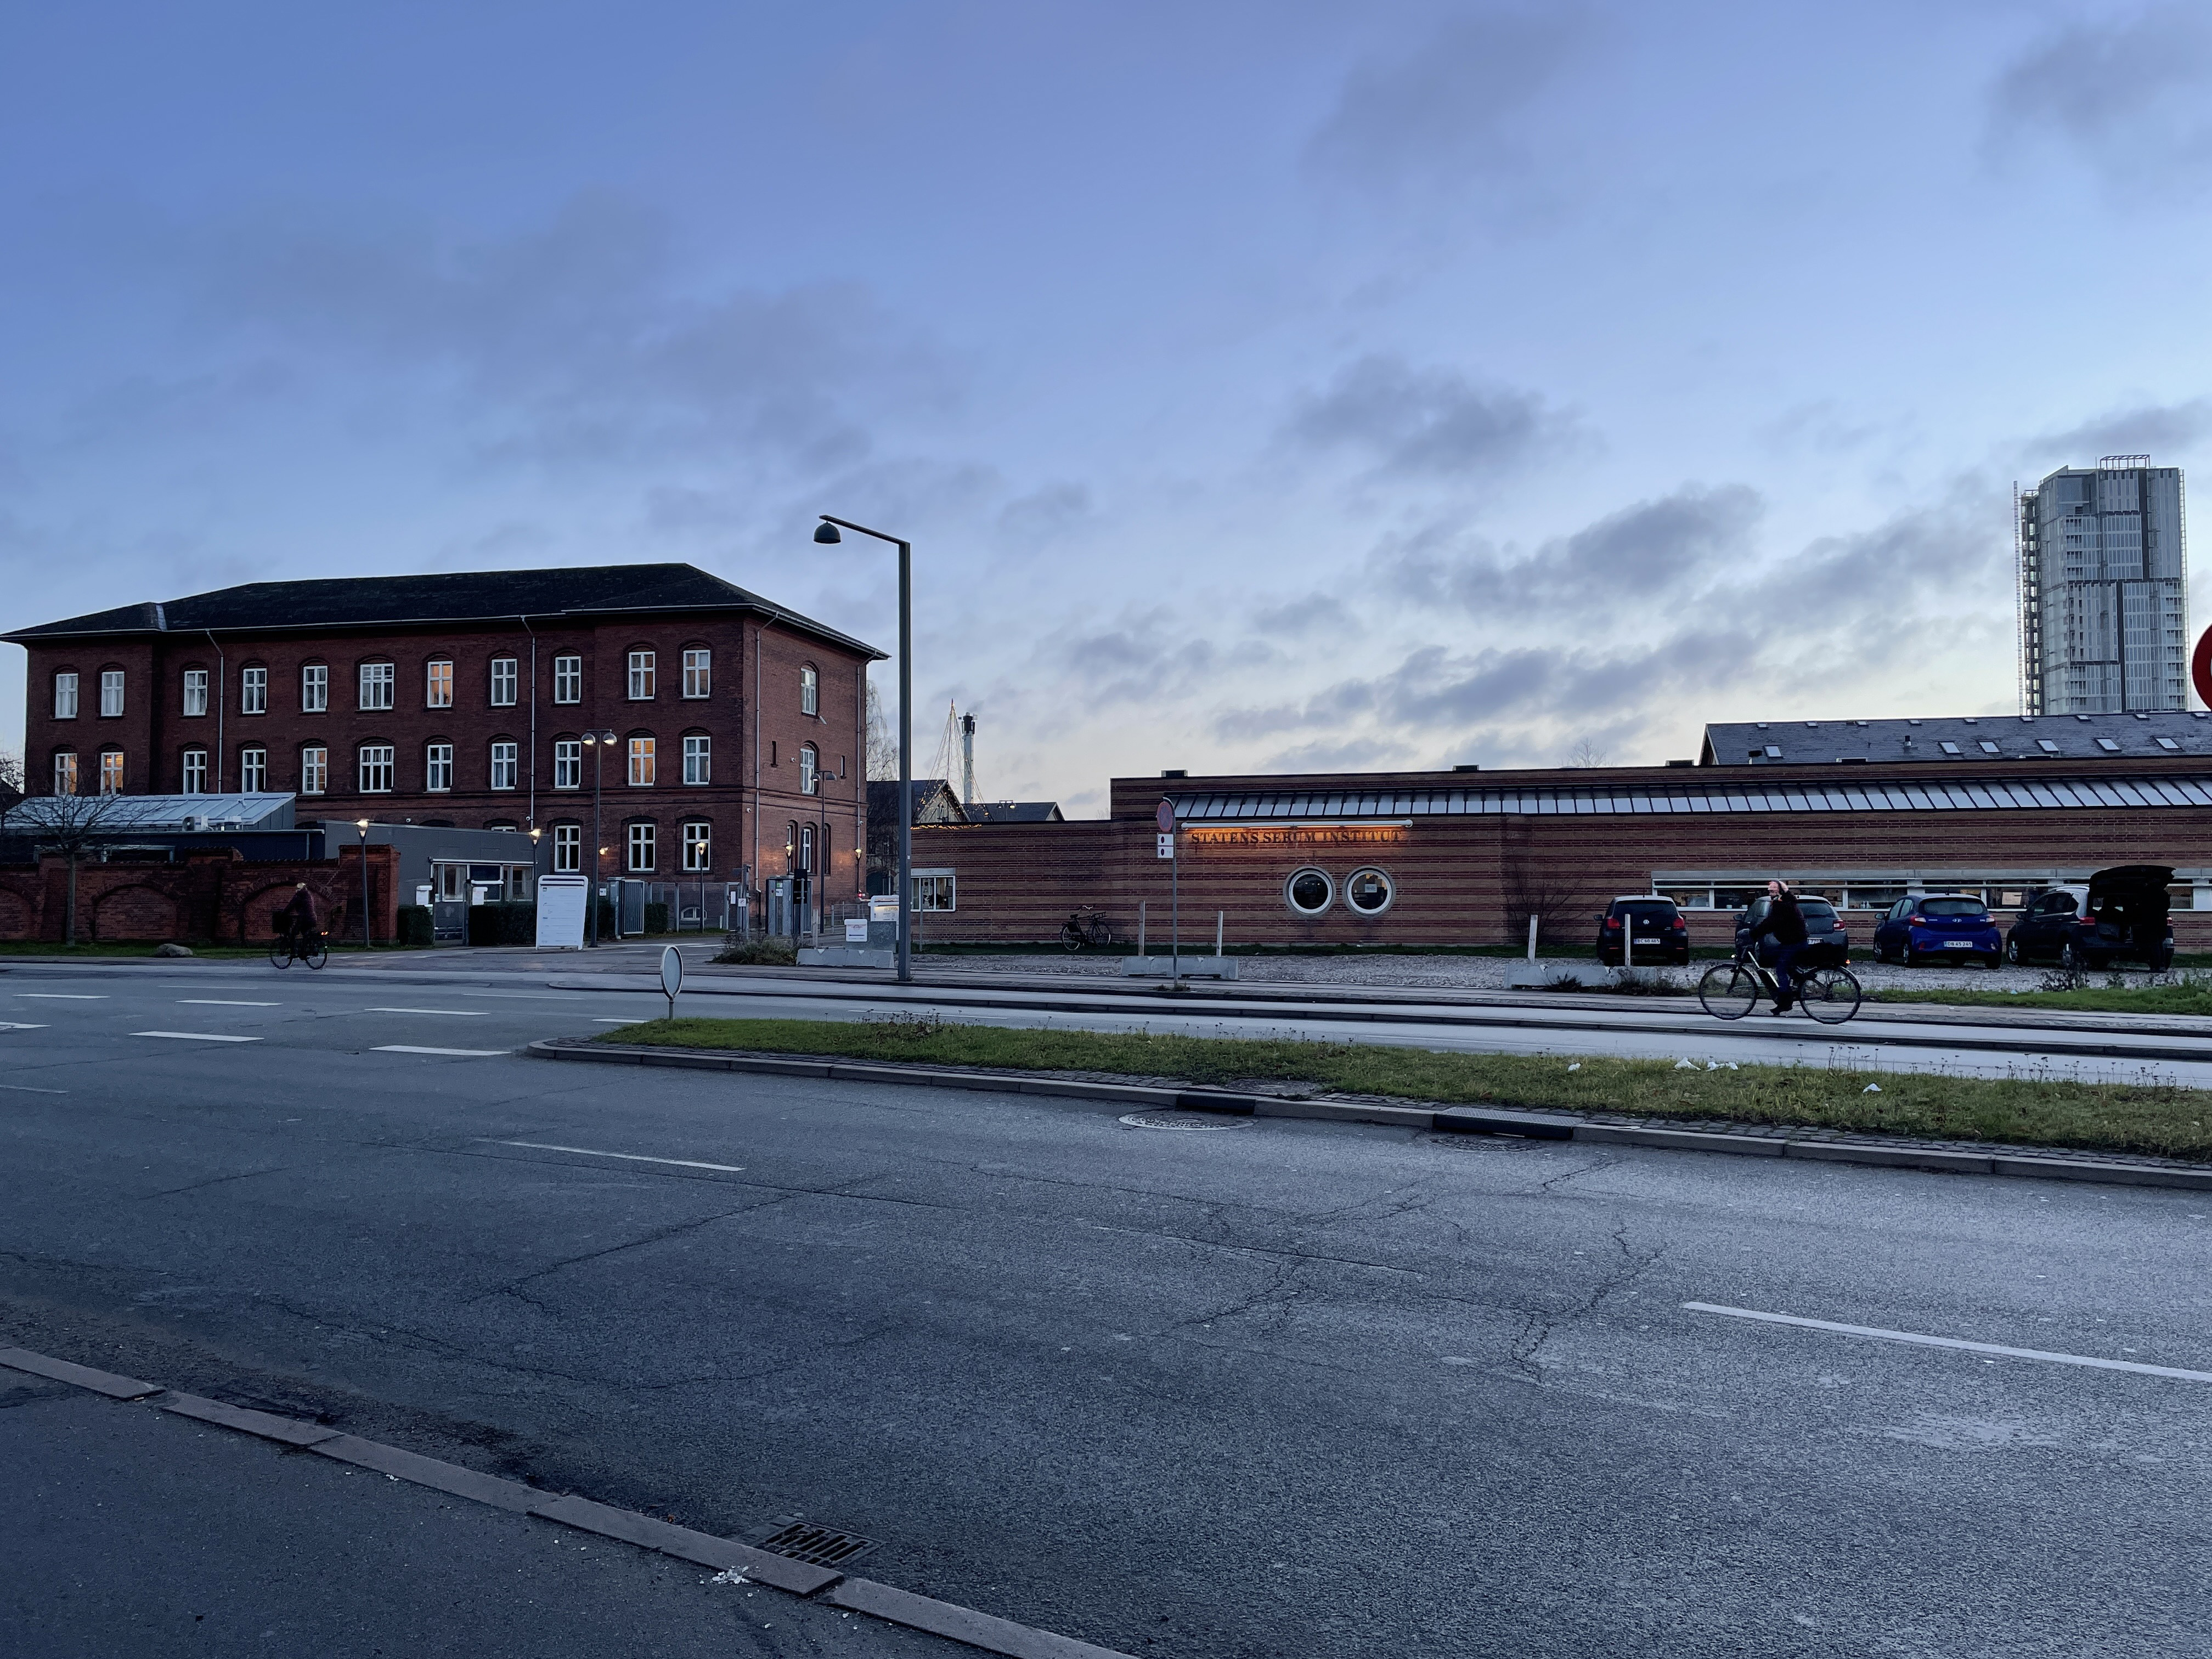 En el Instituto Estatal del Suero, un campus científico gubernamental, Dinamarca rastrea el coronavirus con gran detalle. (Chico Harlan/The Washington Post)